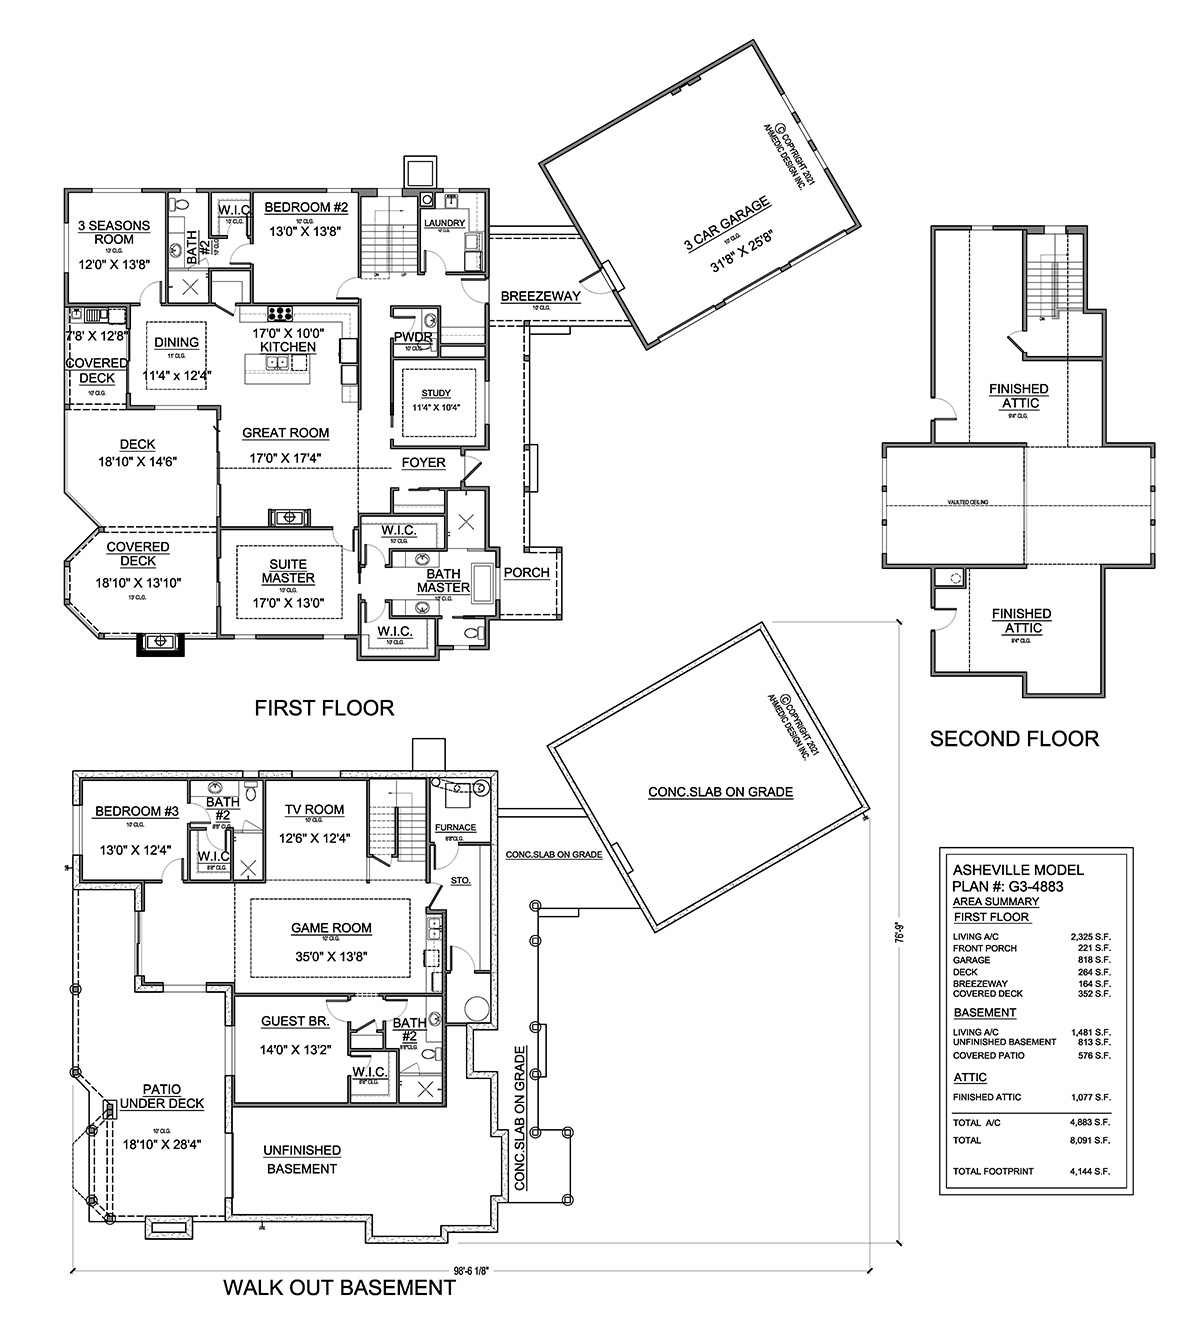 G3-4883 Floor Plan